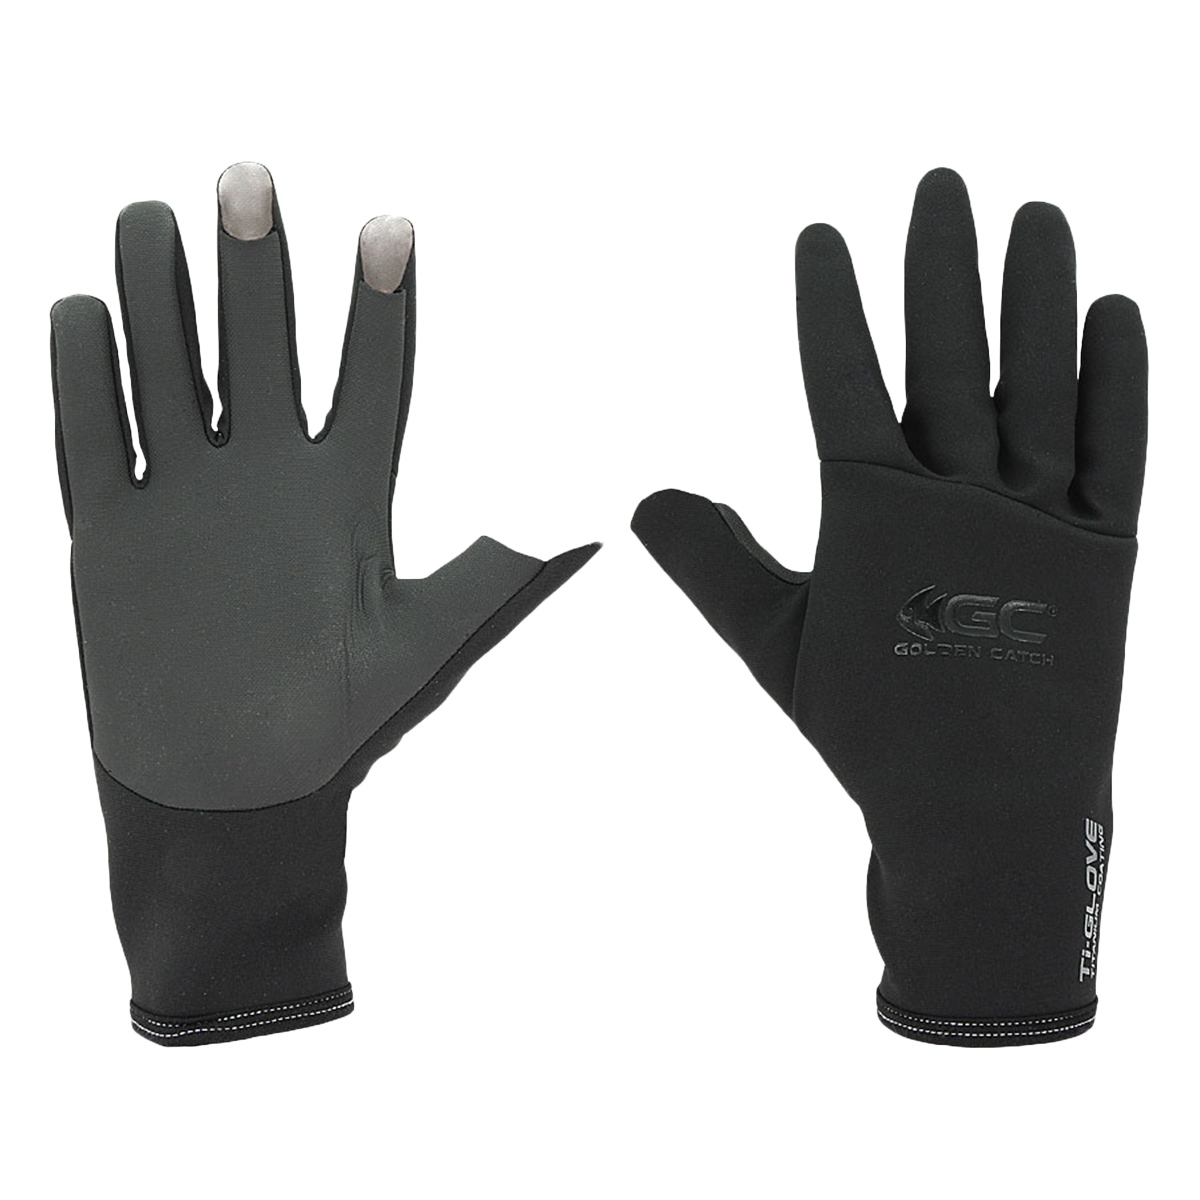 Golden Catch Gloves Titanium 3 Cut Fingertip TR-301